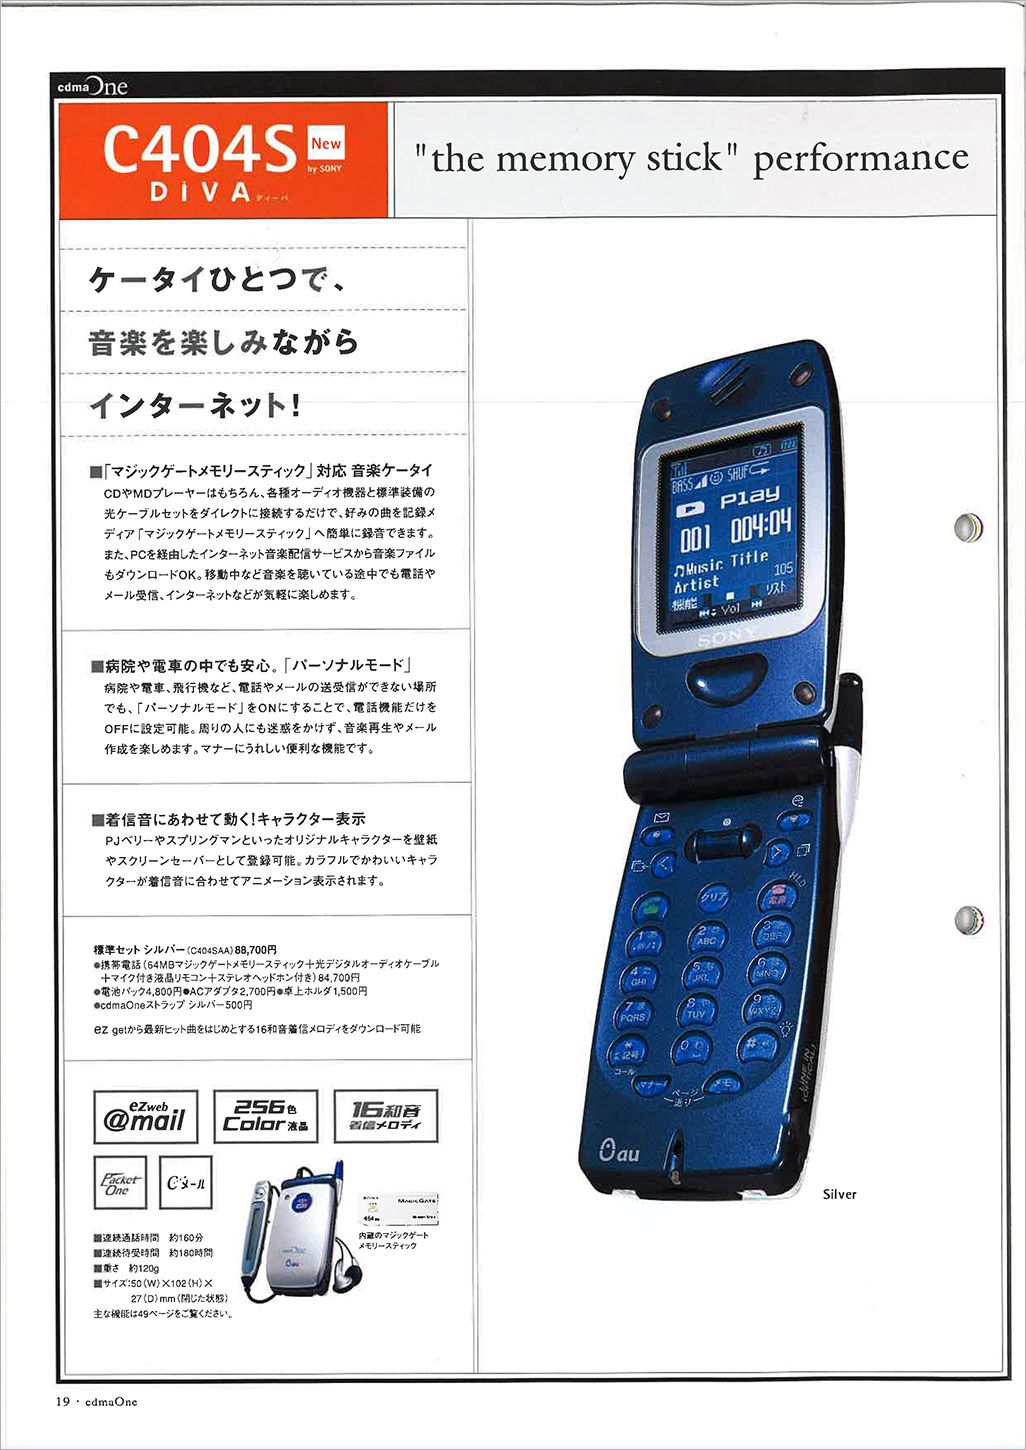 auのソニー製携帯電話DIVA C404S